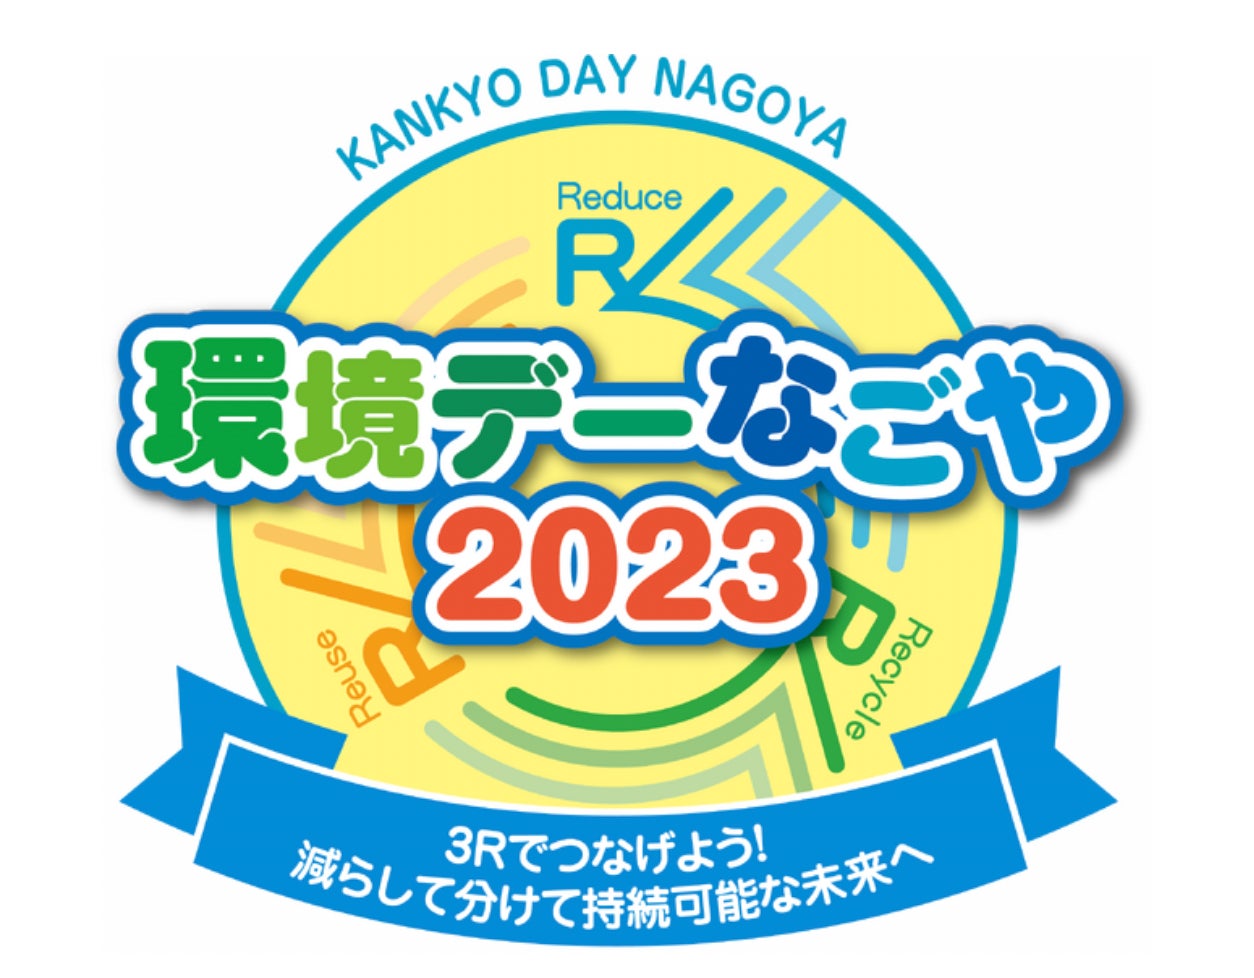 名古屋市で開催される「環境デーなごや2023」に出展